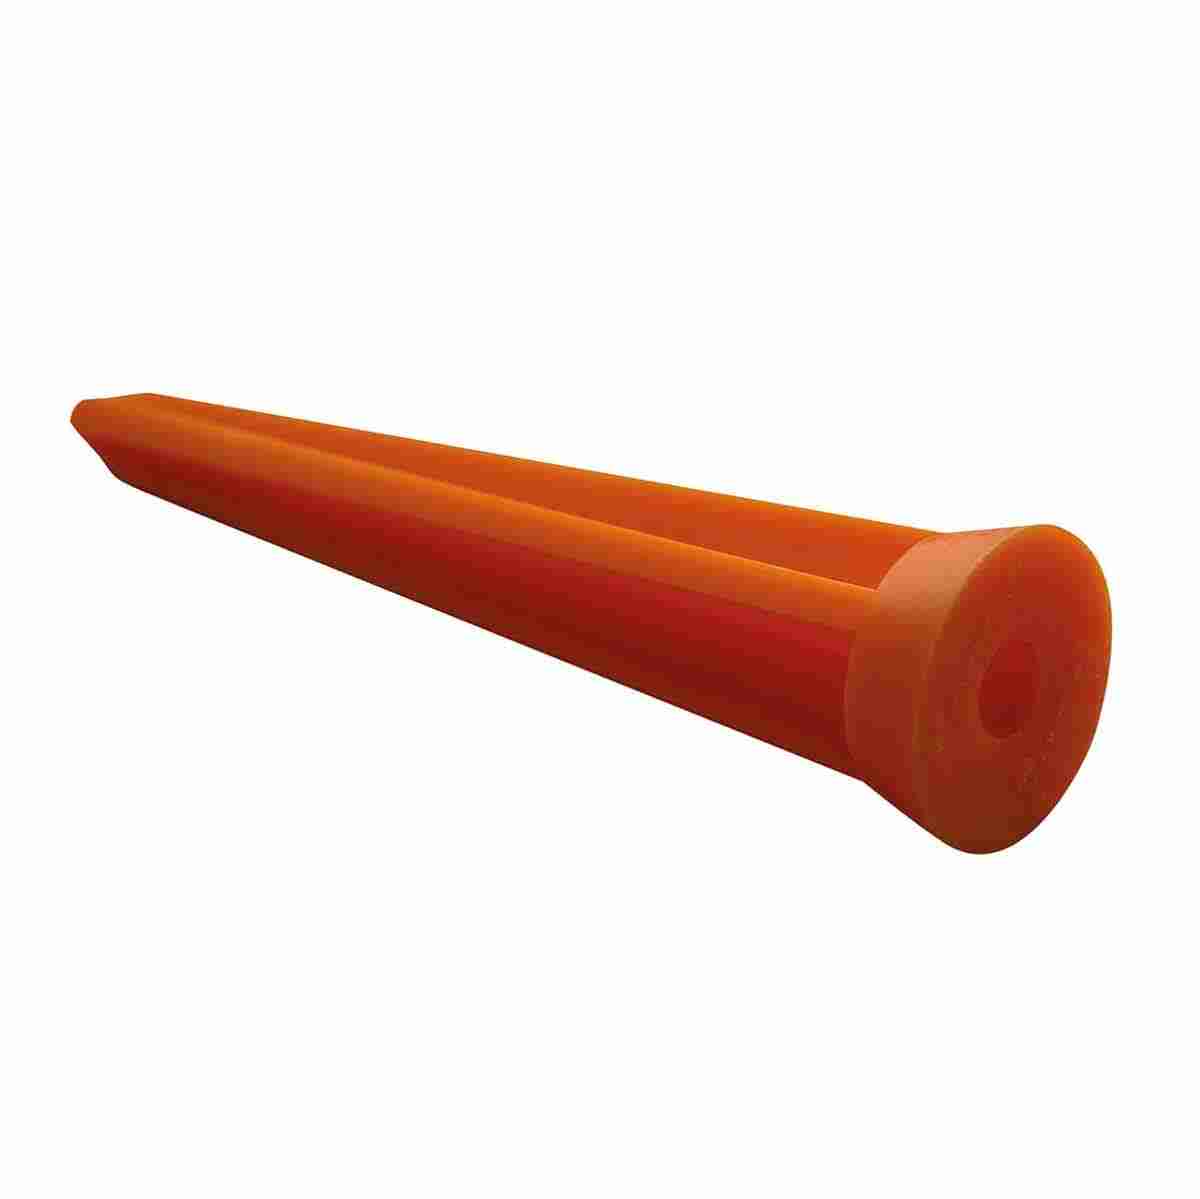 Plastikkegel, Länge: 120 mm, ohne Rand, orange, Aufschrift: Verm.Punkt